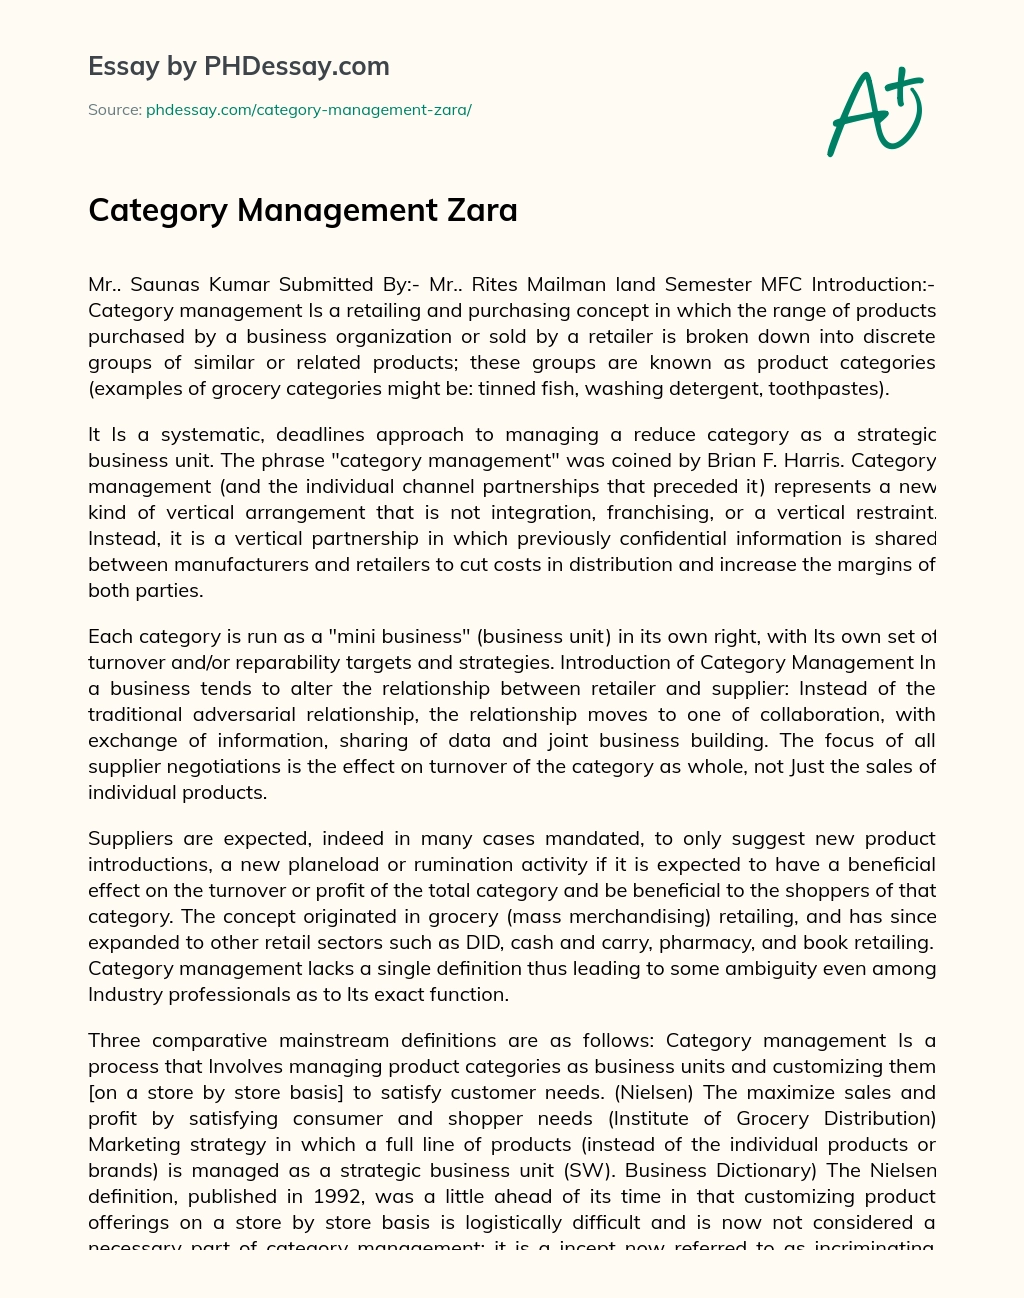 Category Management Zara essay